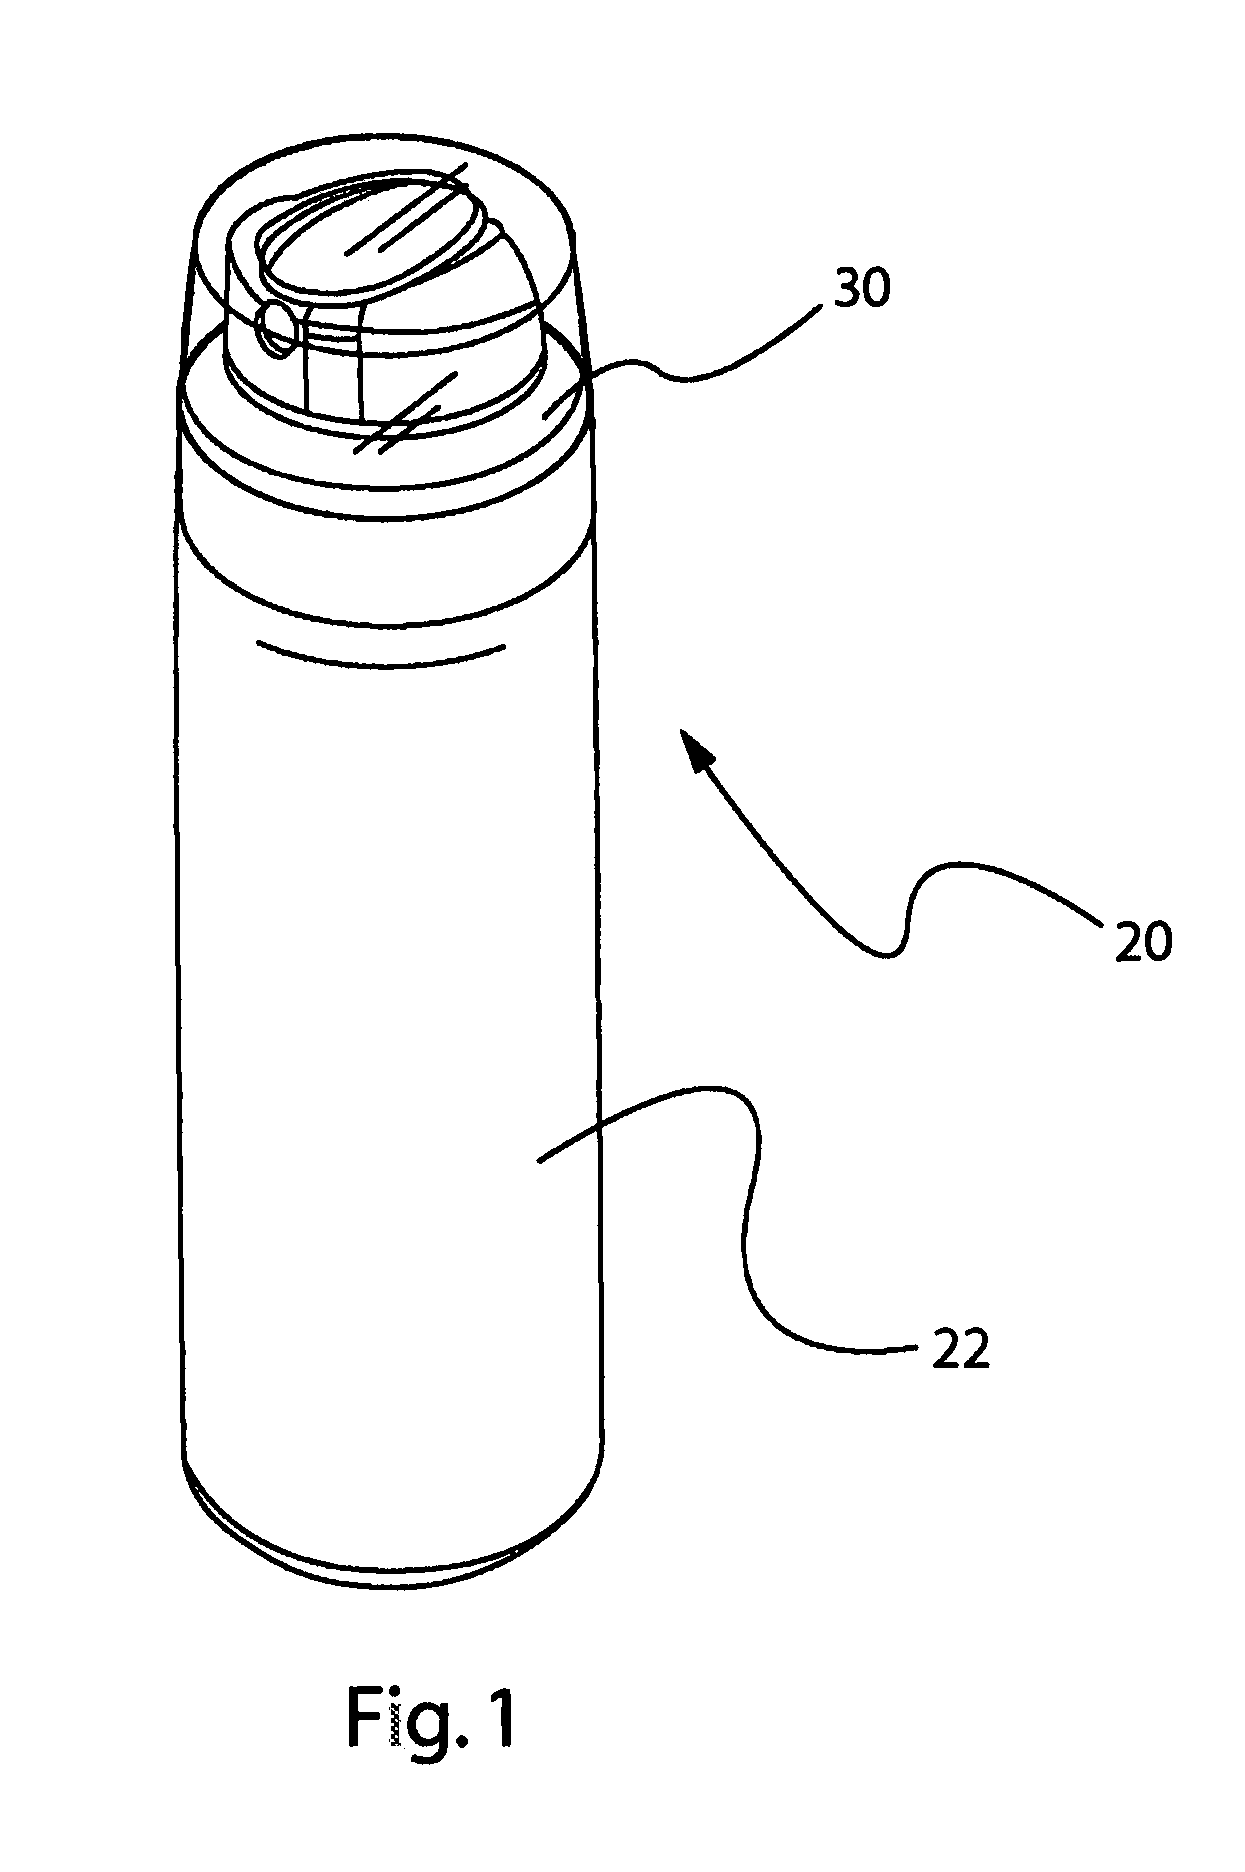 Method of manufacturing an aerosol dispenser